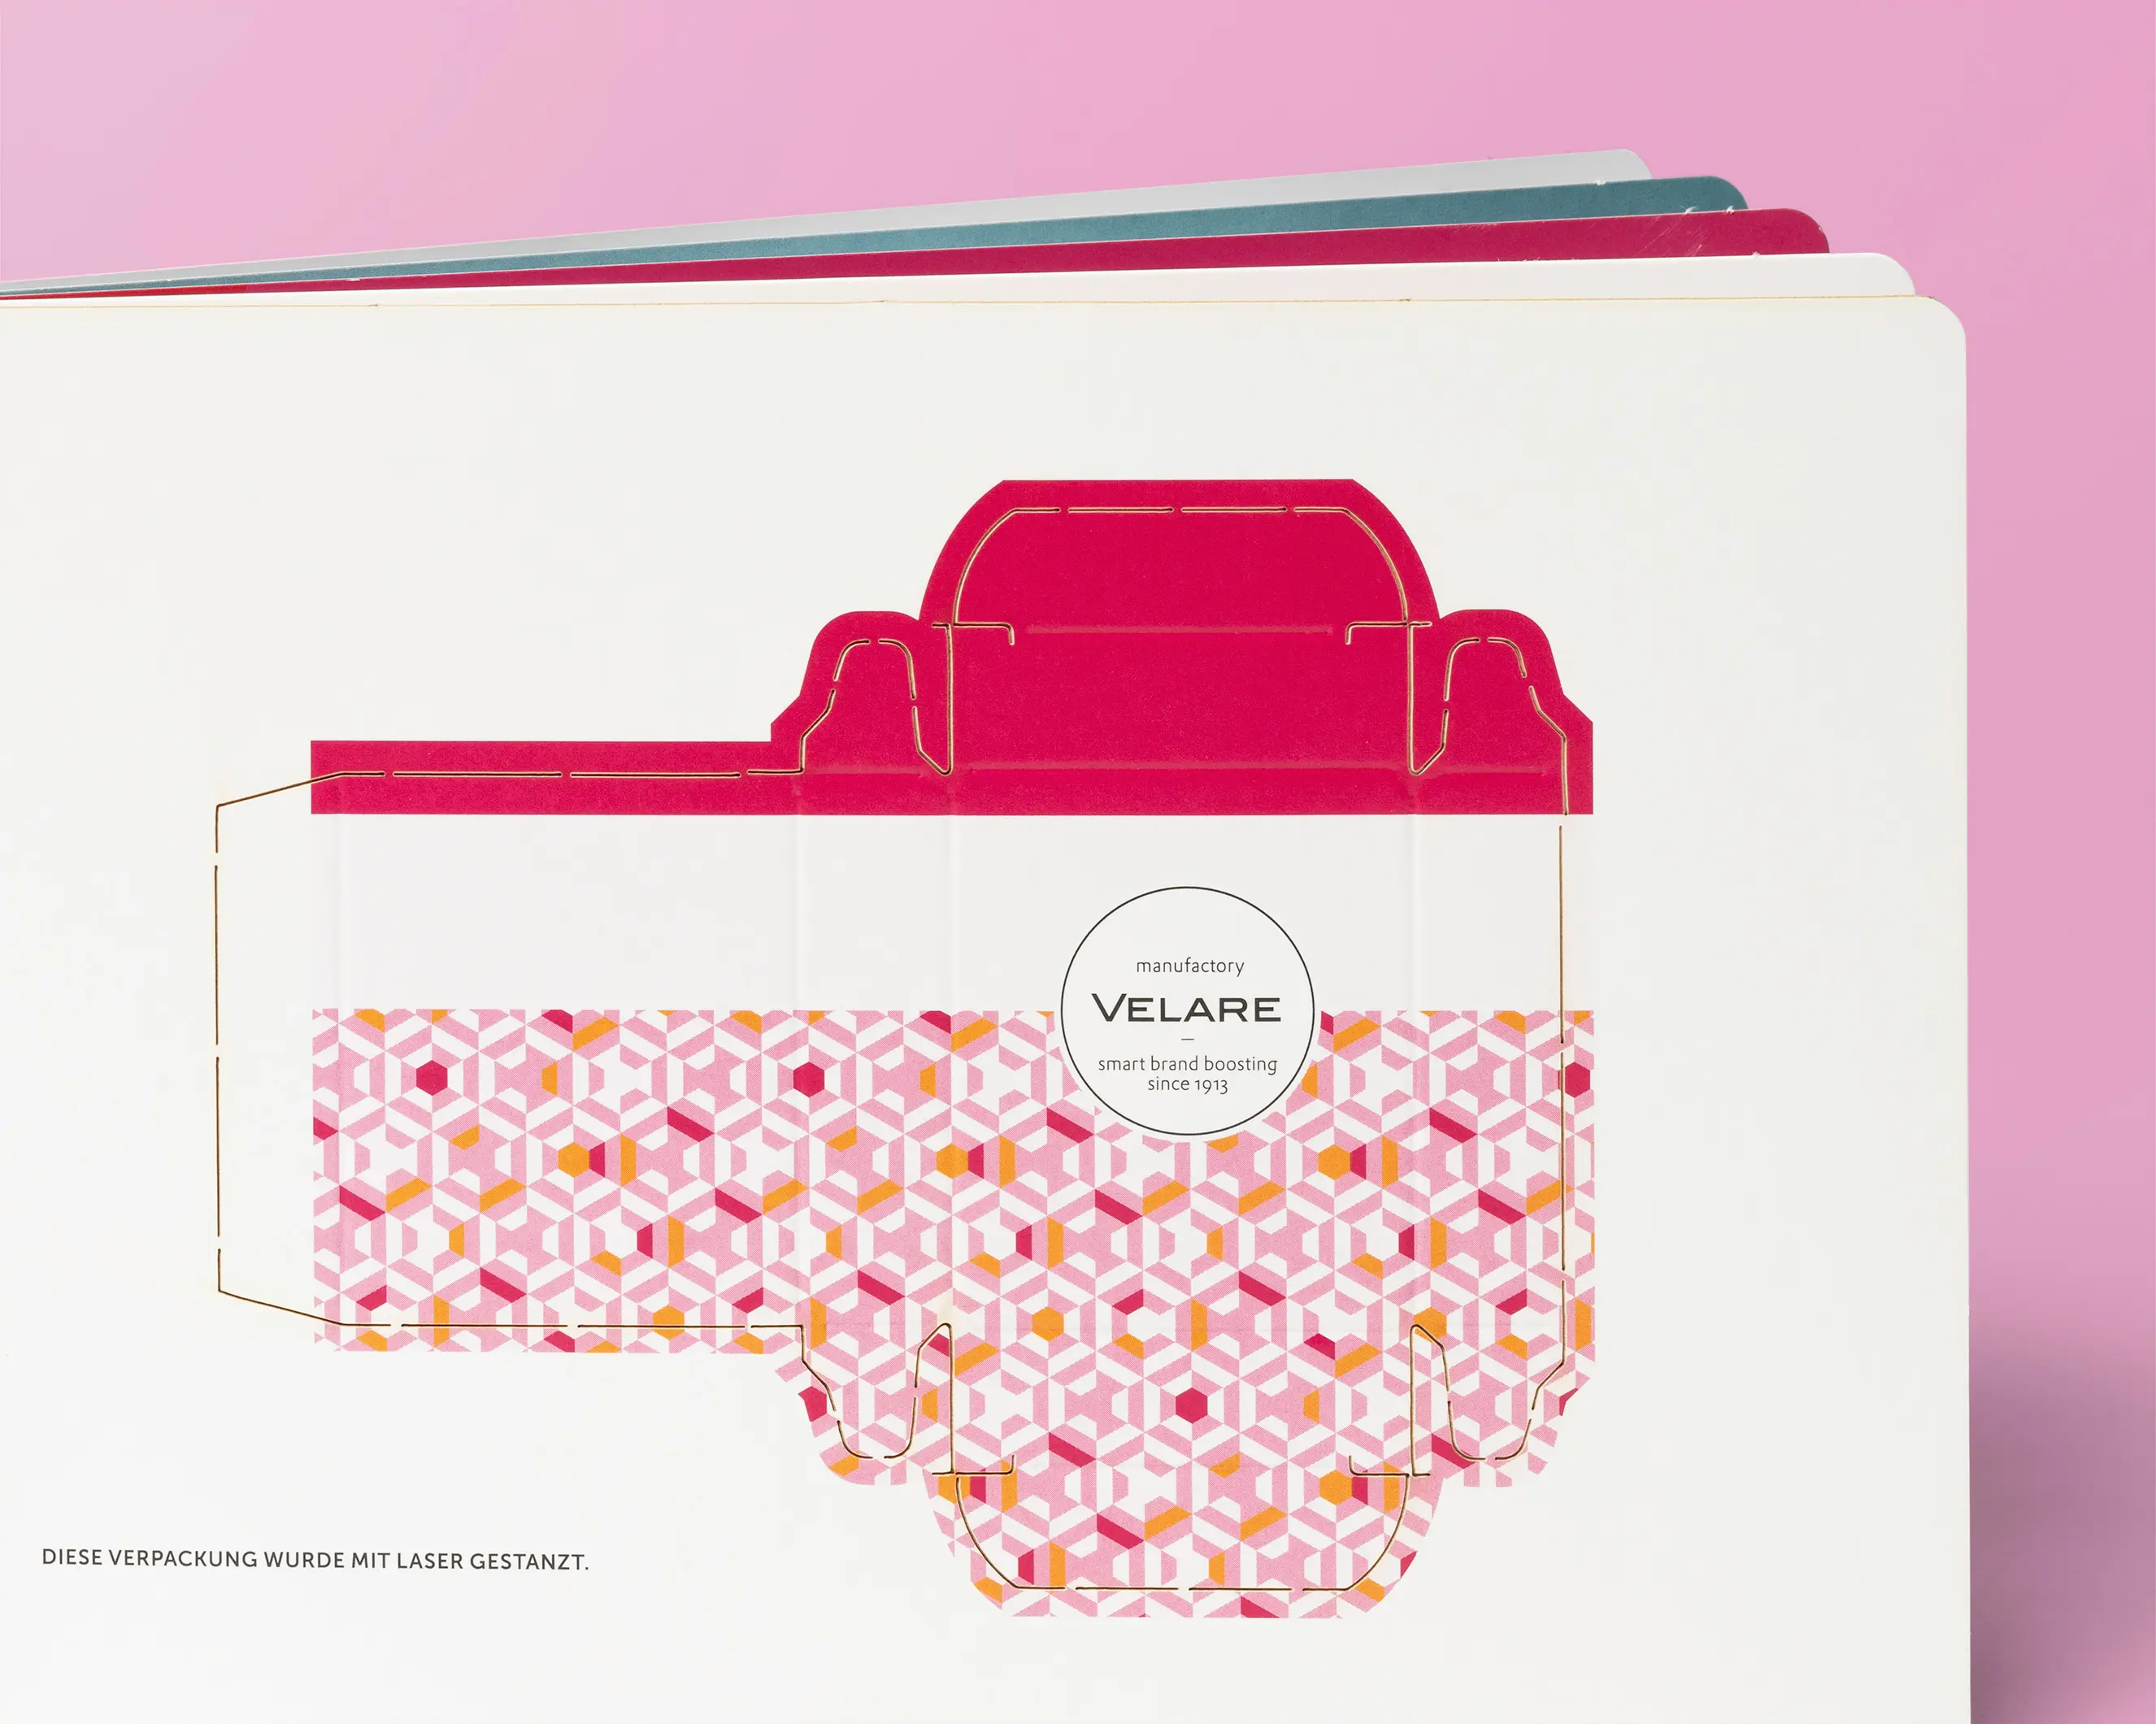 Musterbuch, Laserstanze, kleine Verpackung, pinker Hintergrund